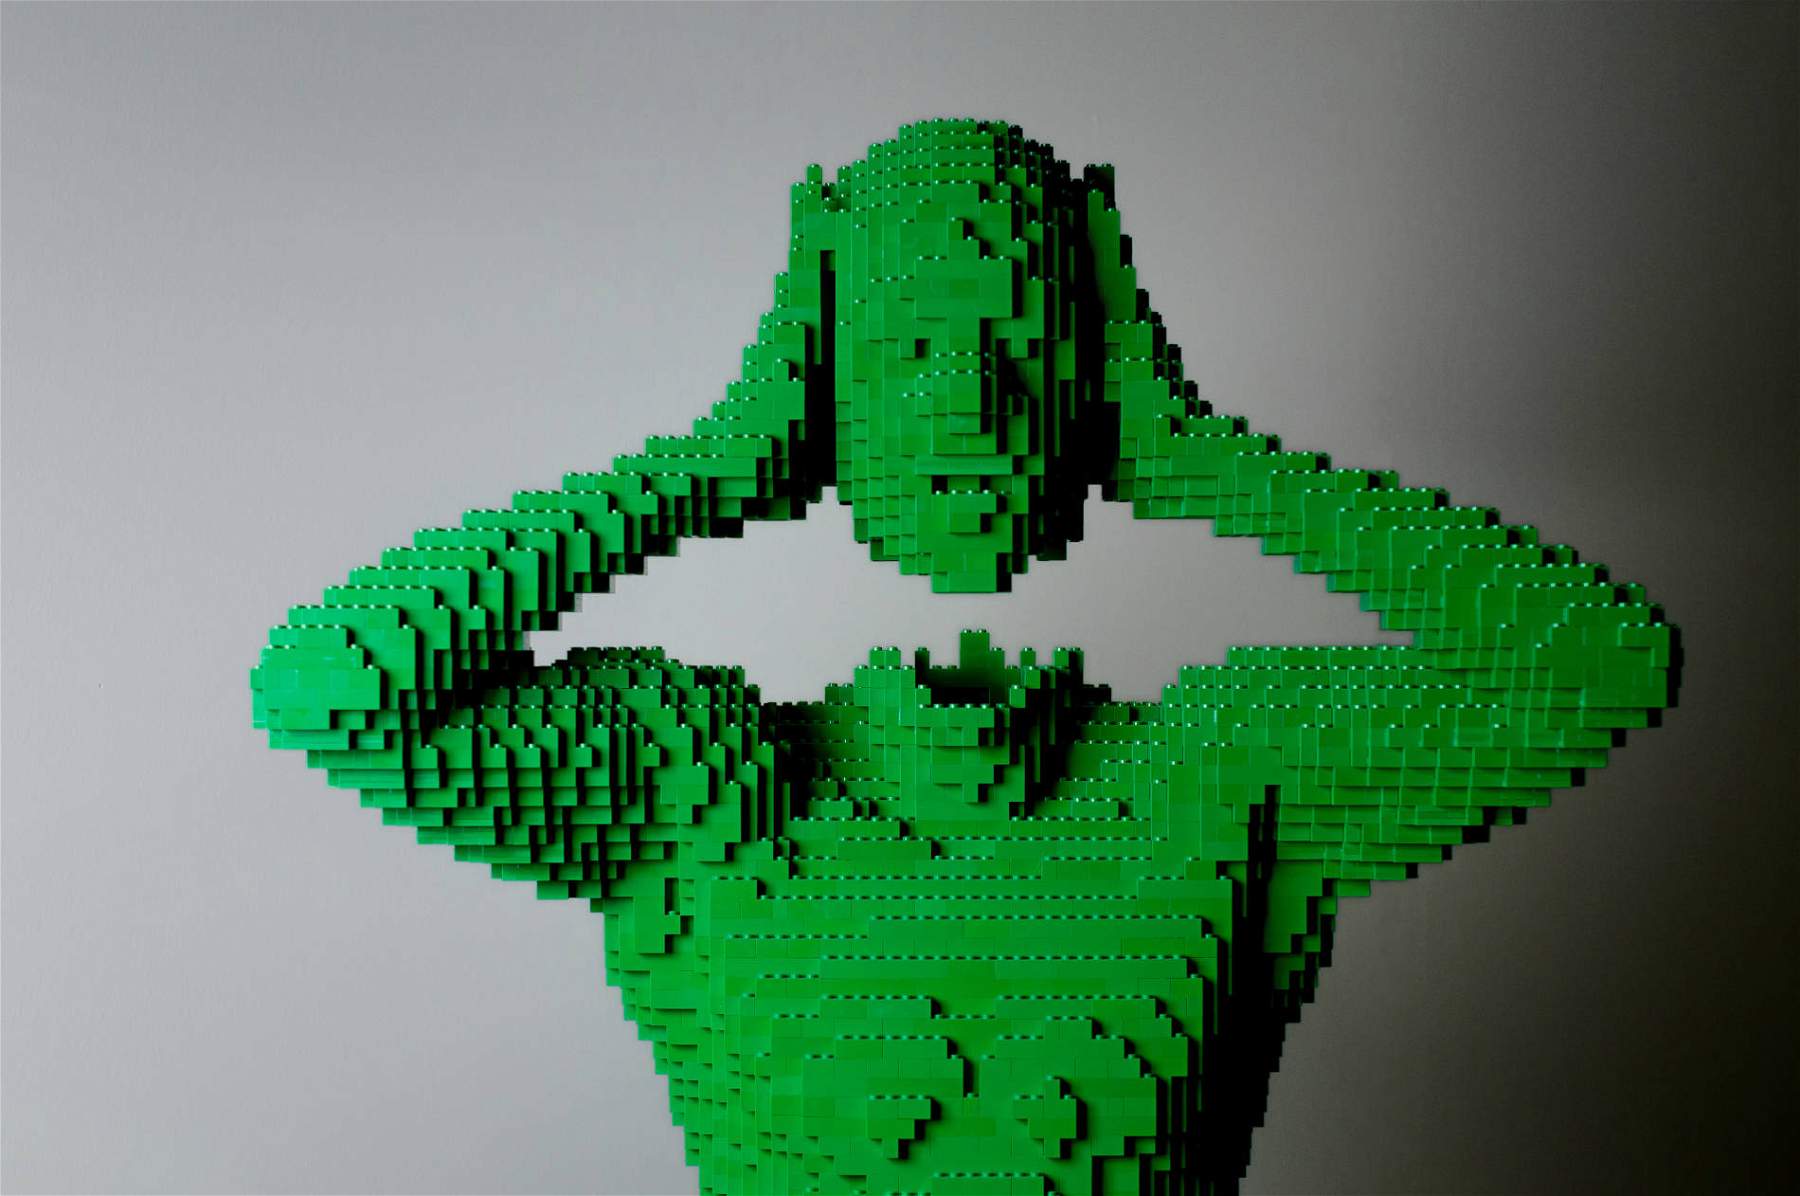 L'art de la brique, l'exposition itinérante de Lego la plus célèbre au monde, arrive à Milan